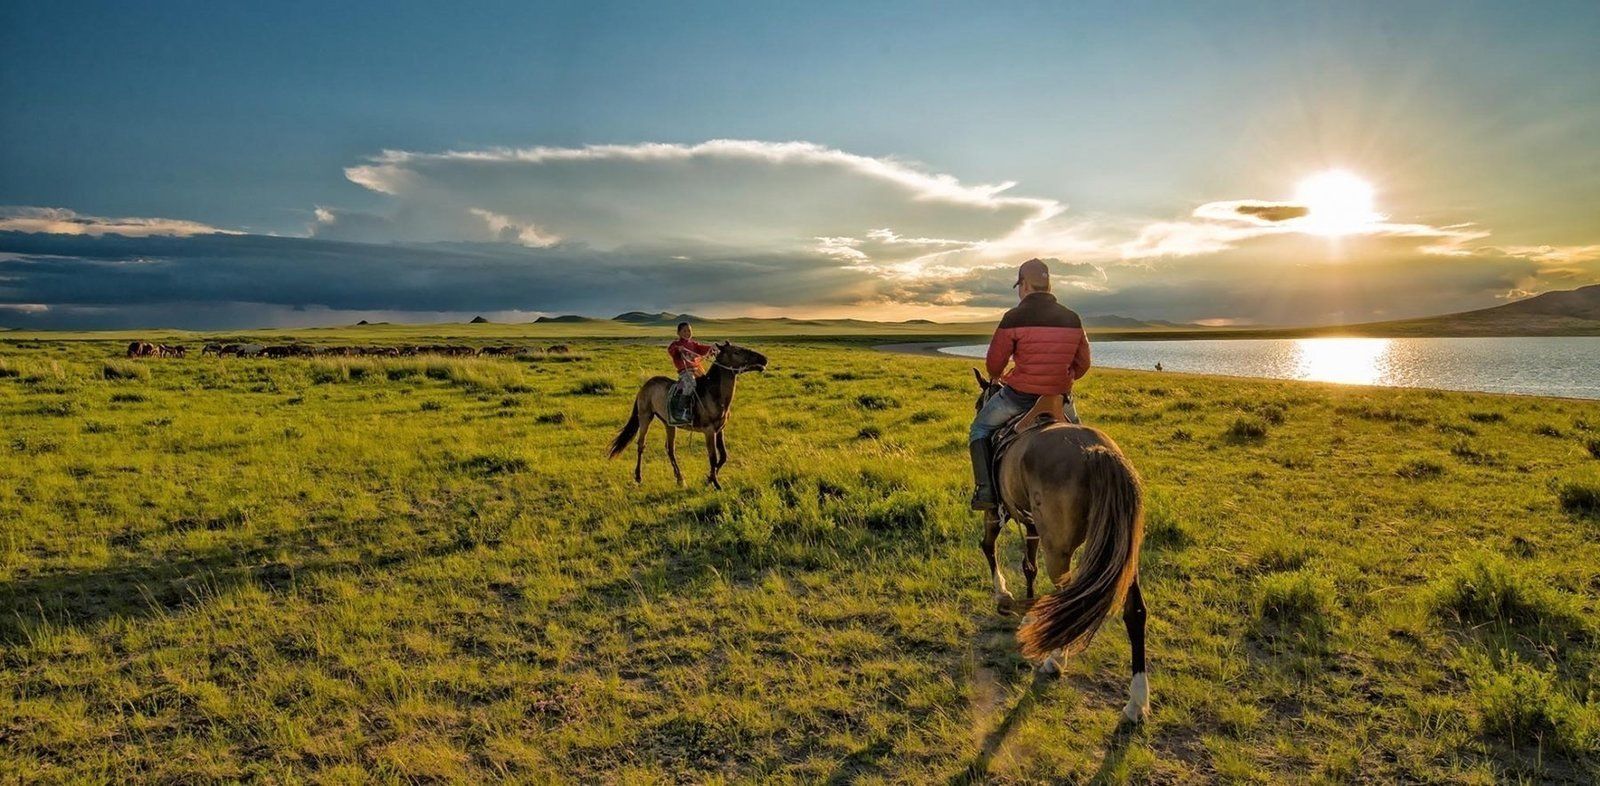  Visite de la Mongolie sauvage.  Guide de voyage, que voir :: Blog de voyage
